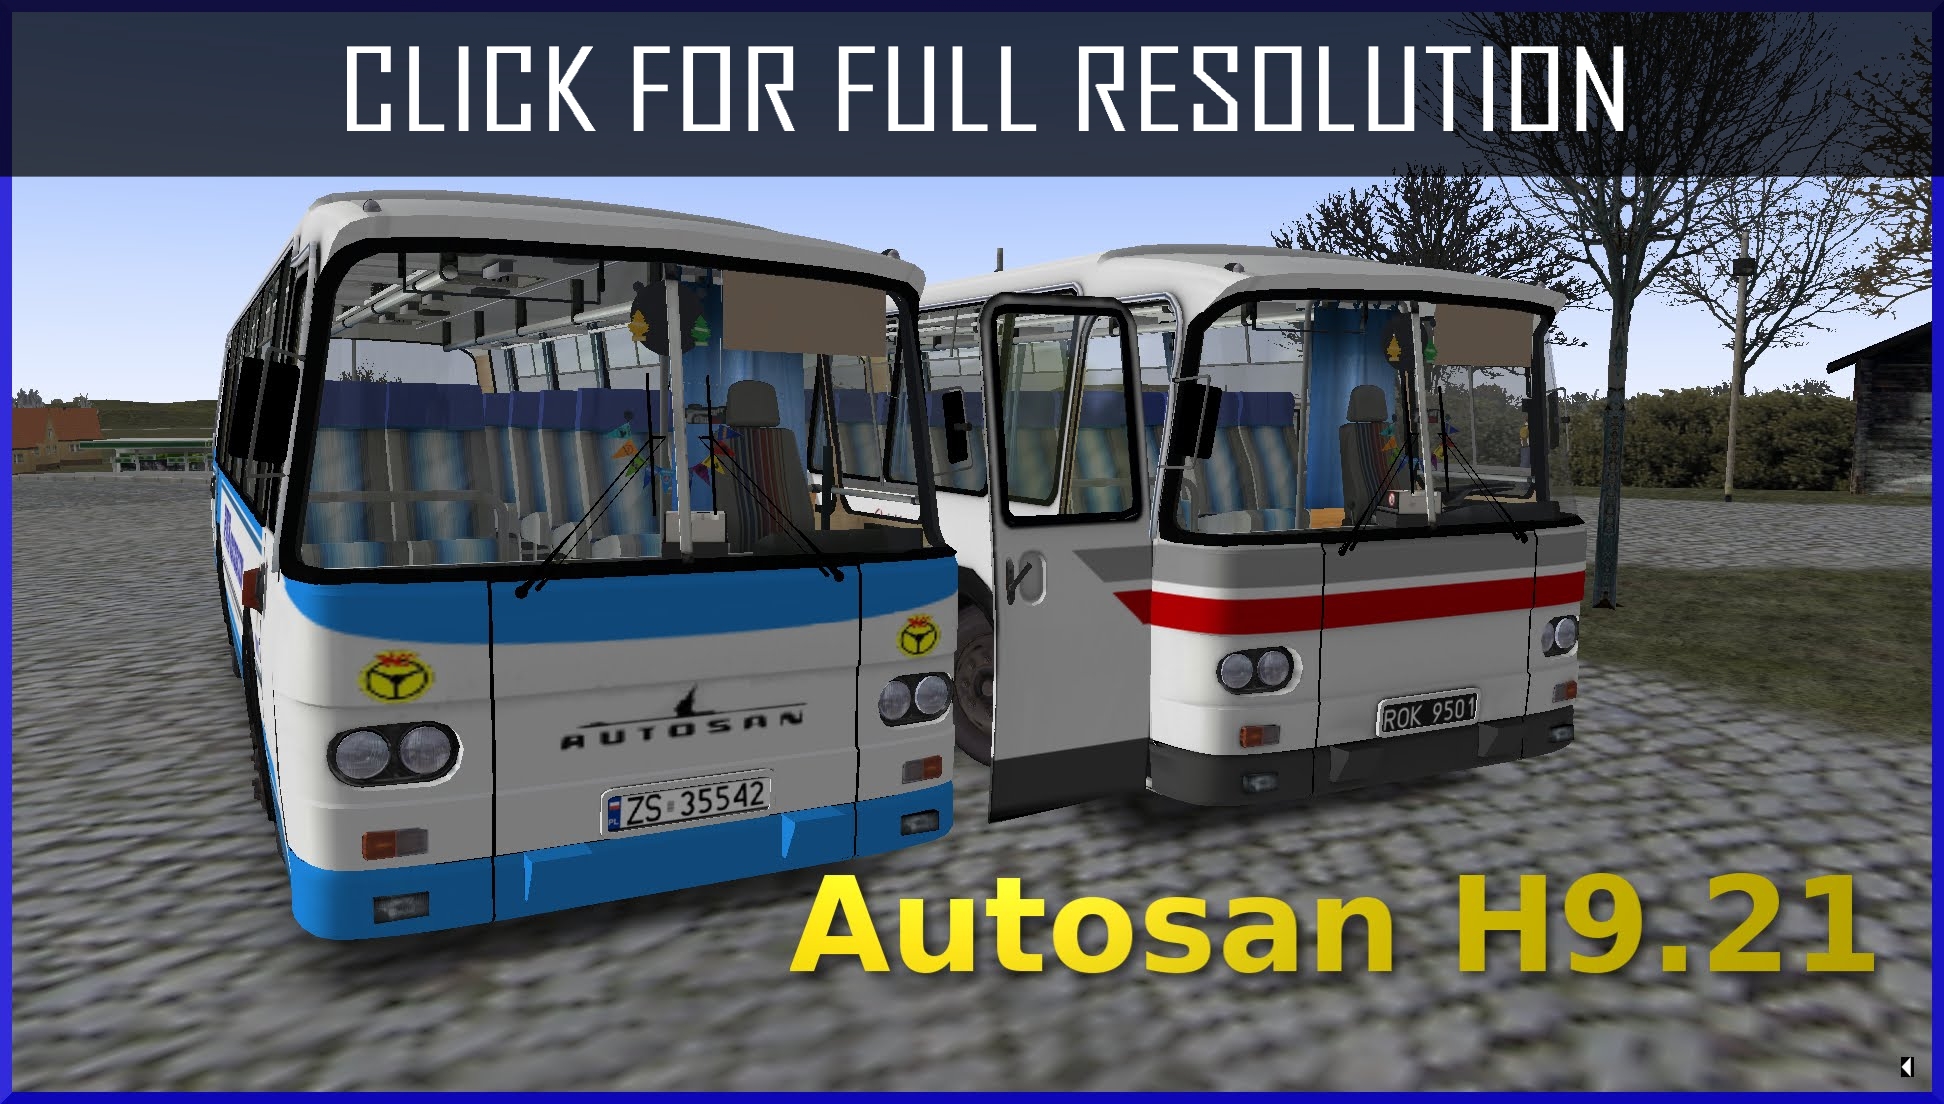 Autosan H9 20